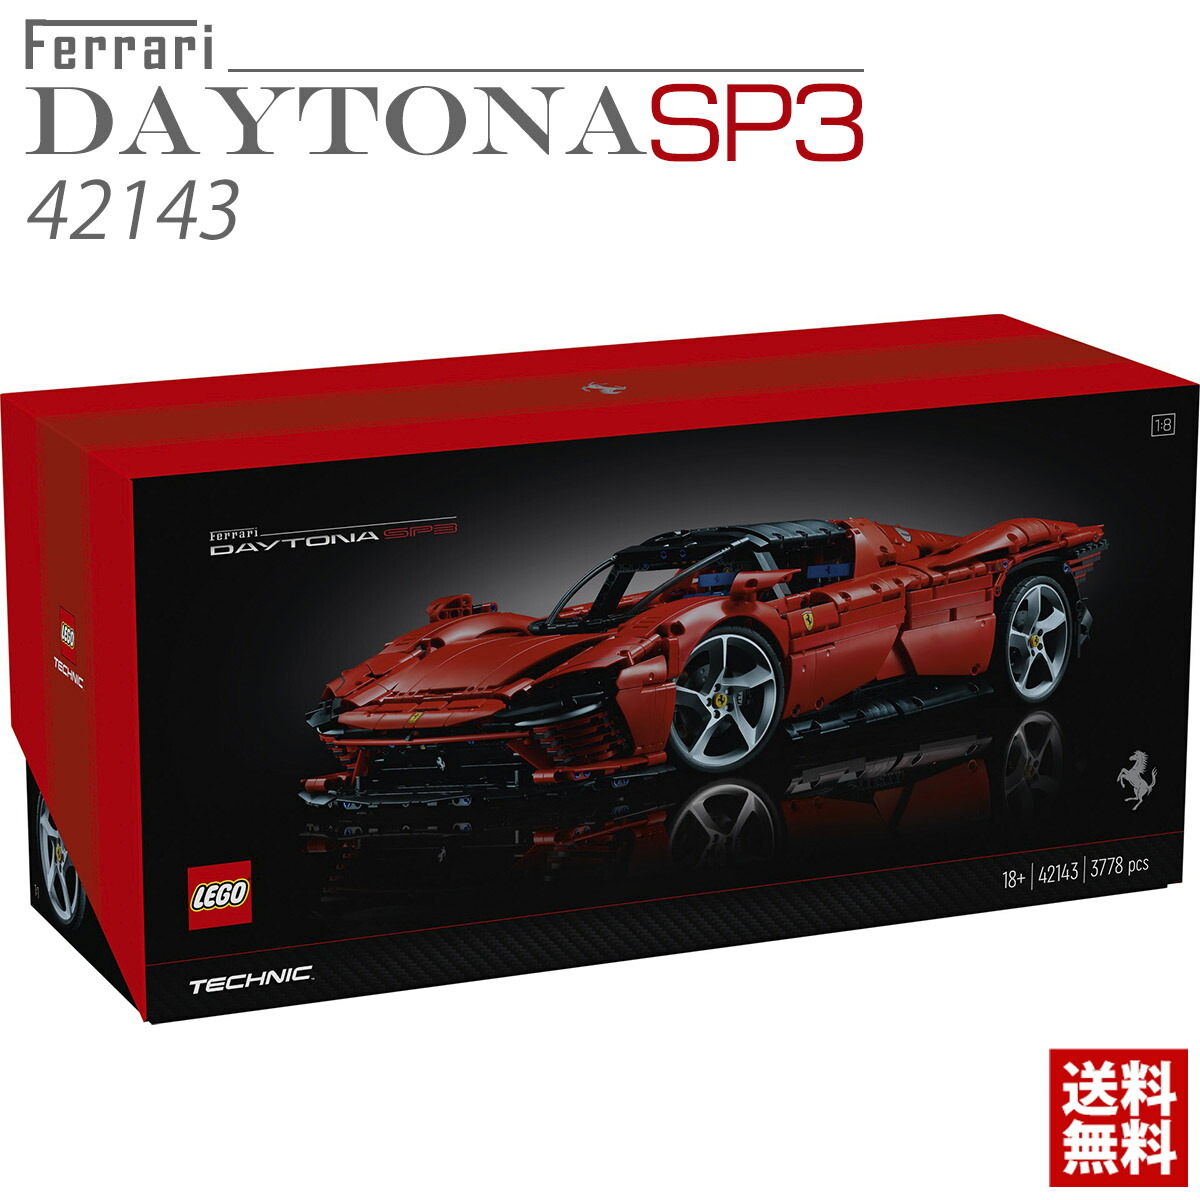 レゴ テクニック 42143 フェラーリ Daytona デイトナ SP3 LEGO 正規品